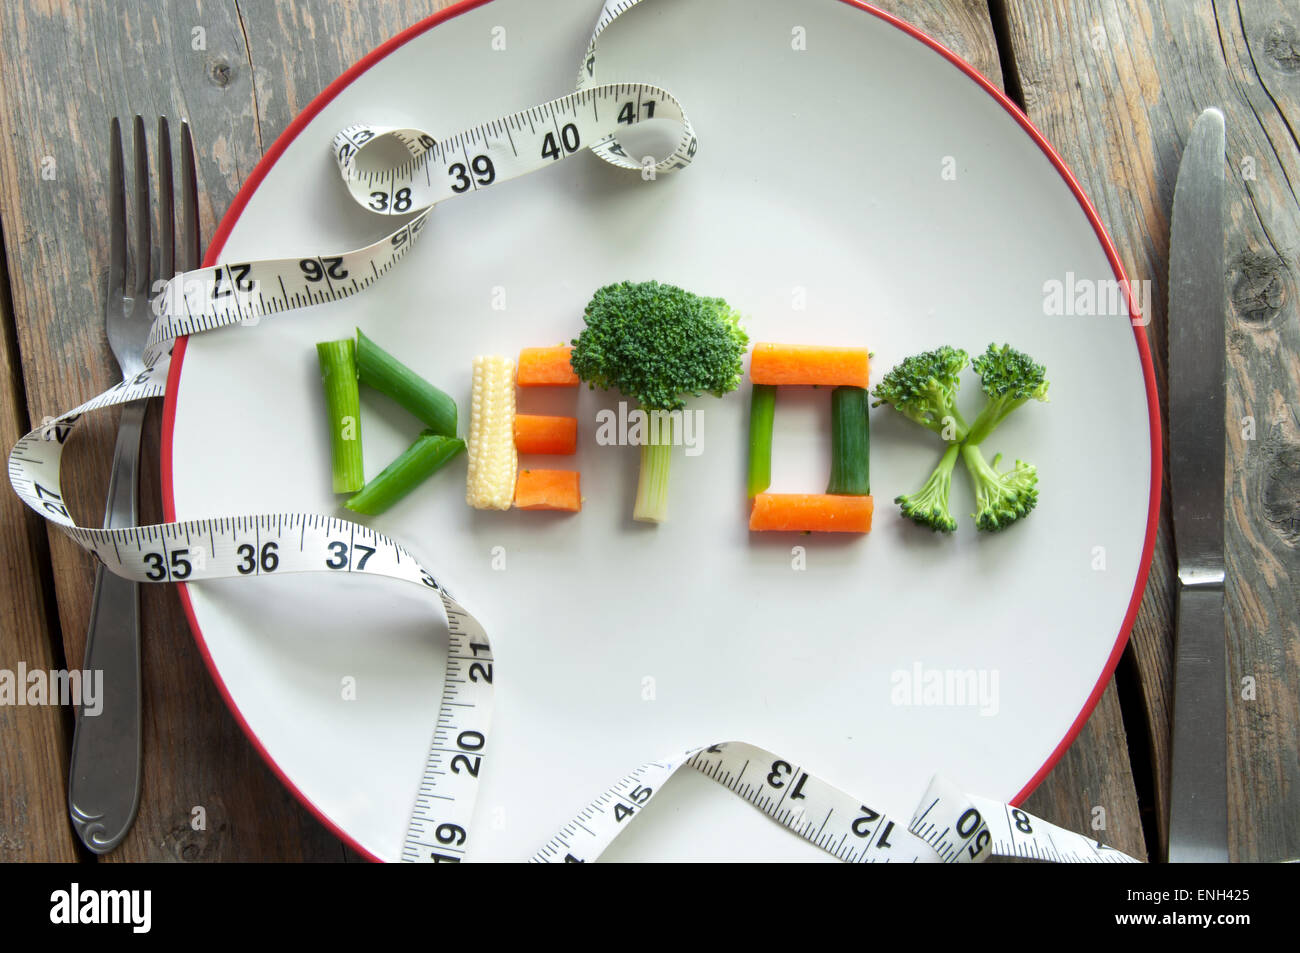 Detox-Text auf einer Platte aus verschiedenem Gemüse wie Broccoli, Frühlingszwiebeln und Karotten Stockfoto